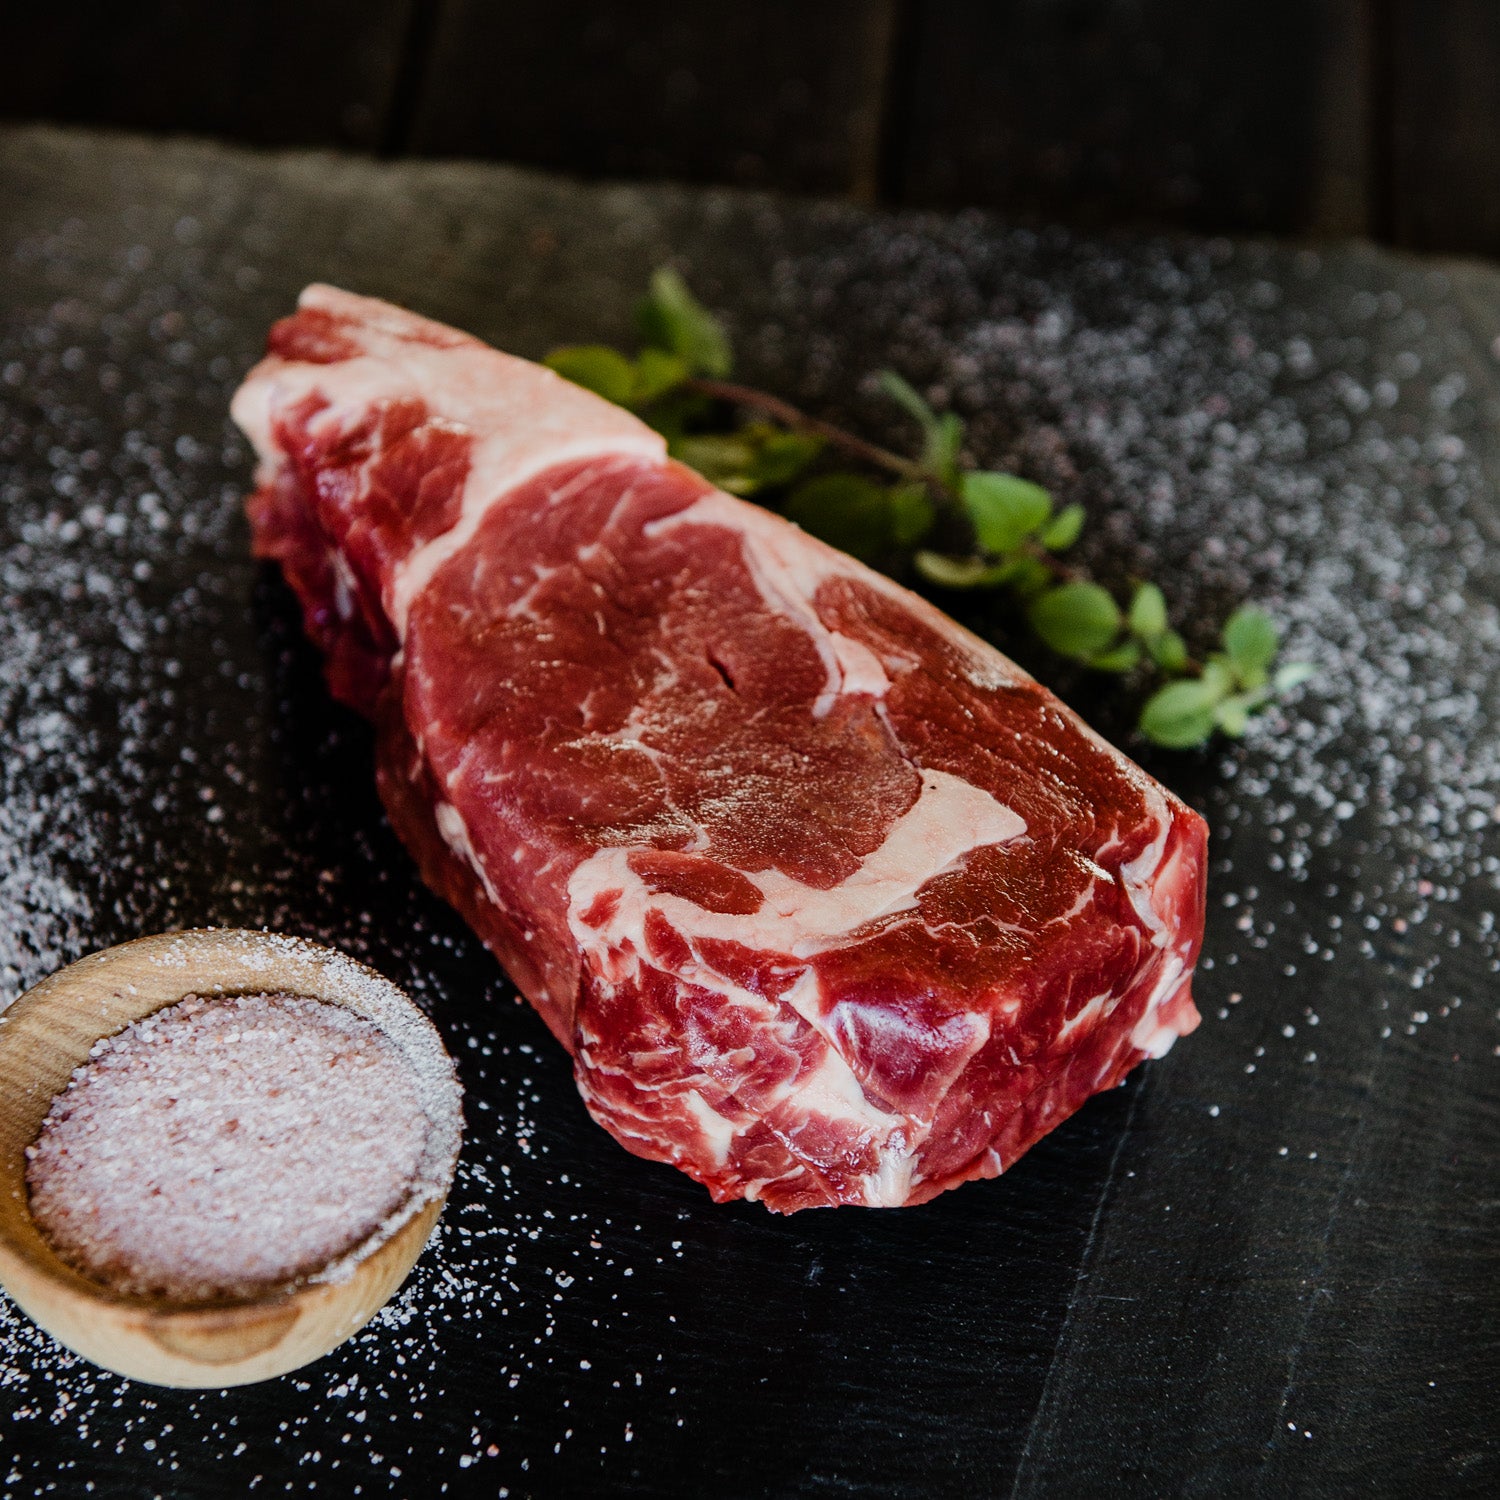 Ehrenwort Organic Fleischtiger Grill & Steak Seasoning, 42 g